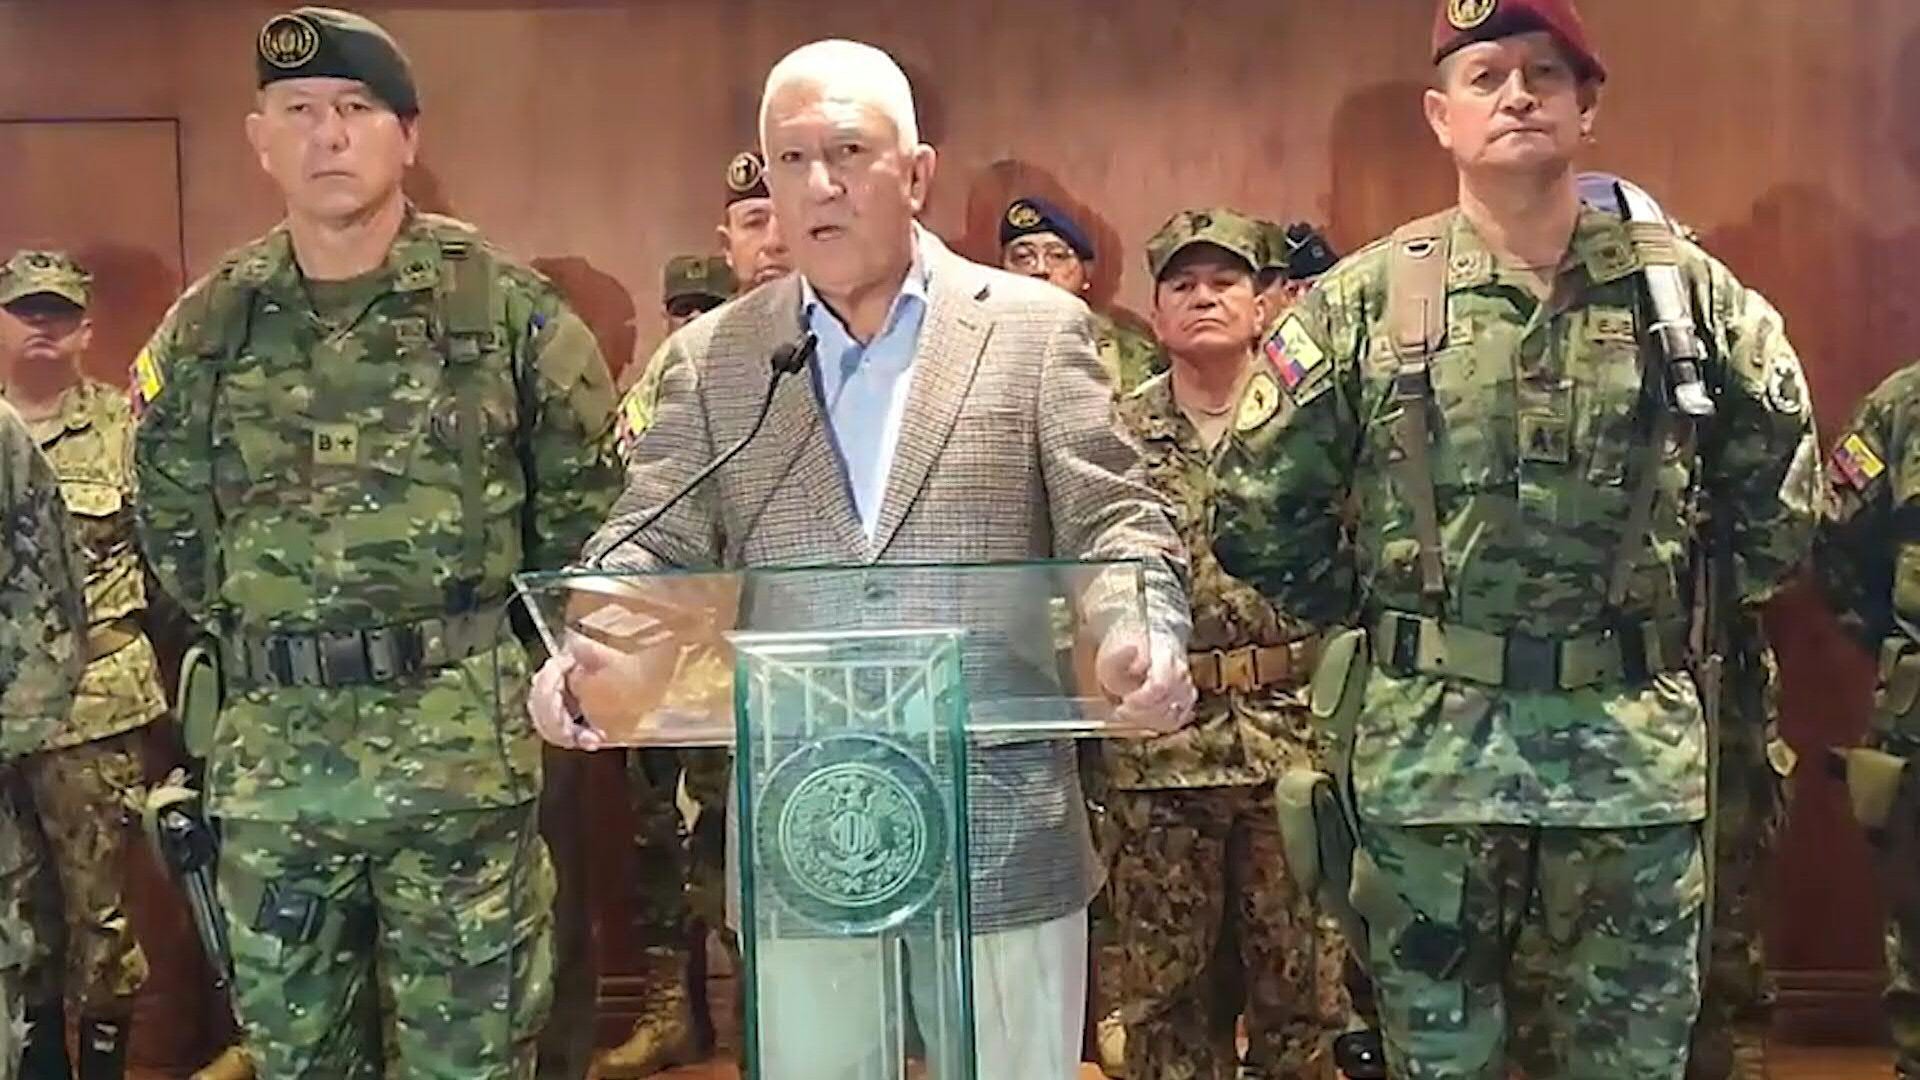 El ministro de Defensa de Ecuador, Luis Lara, dijo que las Fuerzas Armadas "no permitirán que se intente romper el orden constitucional o cualquier acción contra la democracia", tras nueve días de protestas de indígenas contra el gobierno